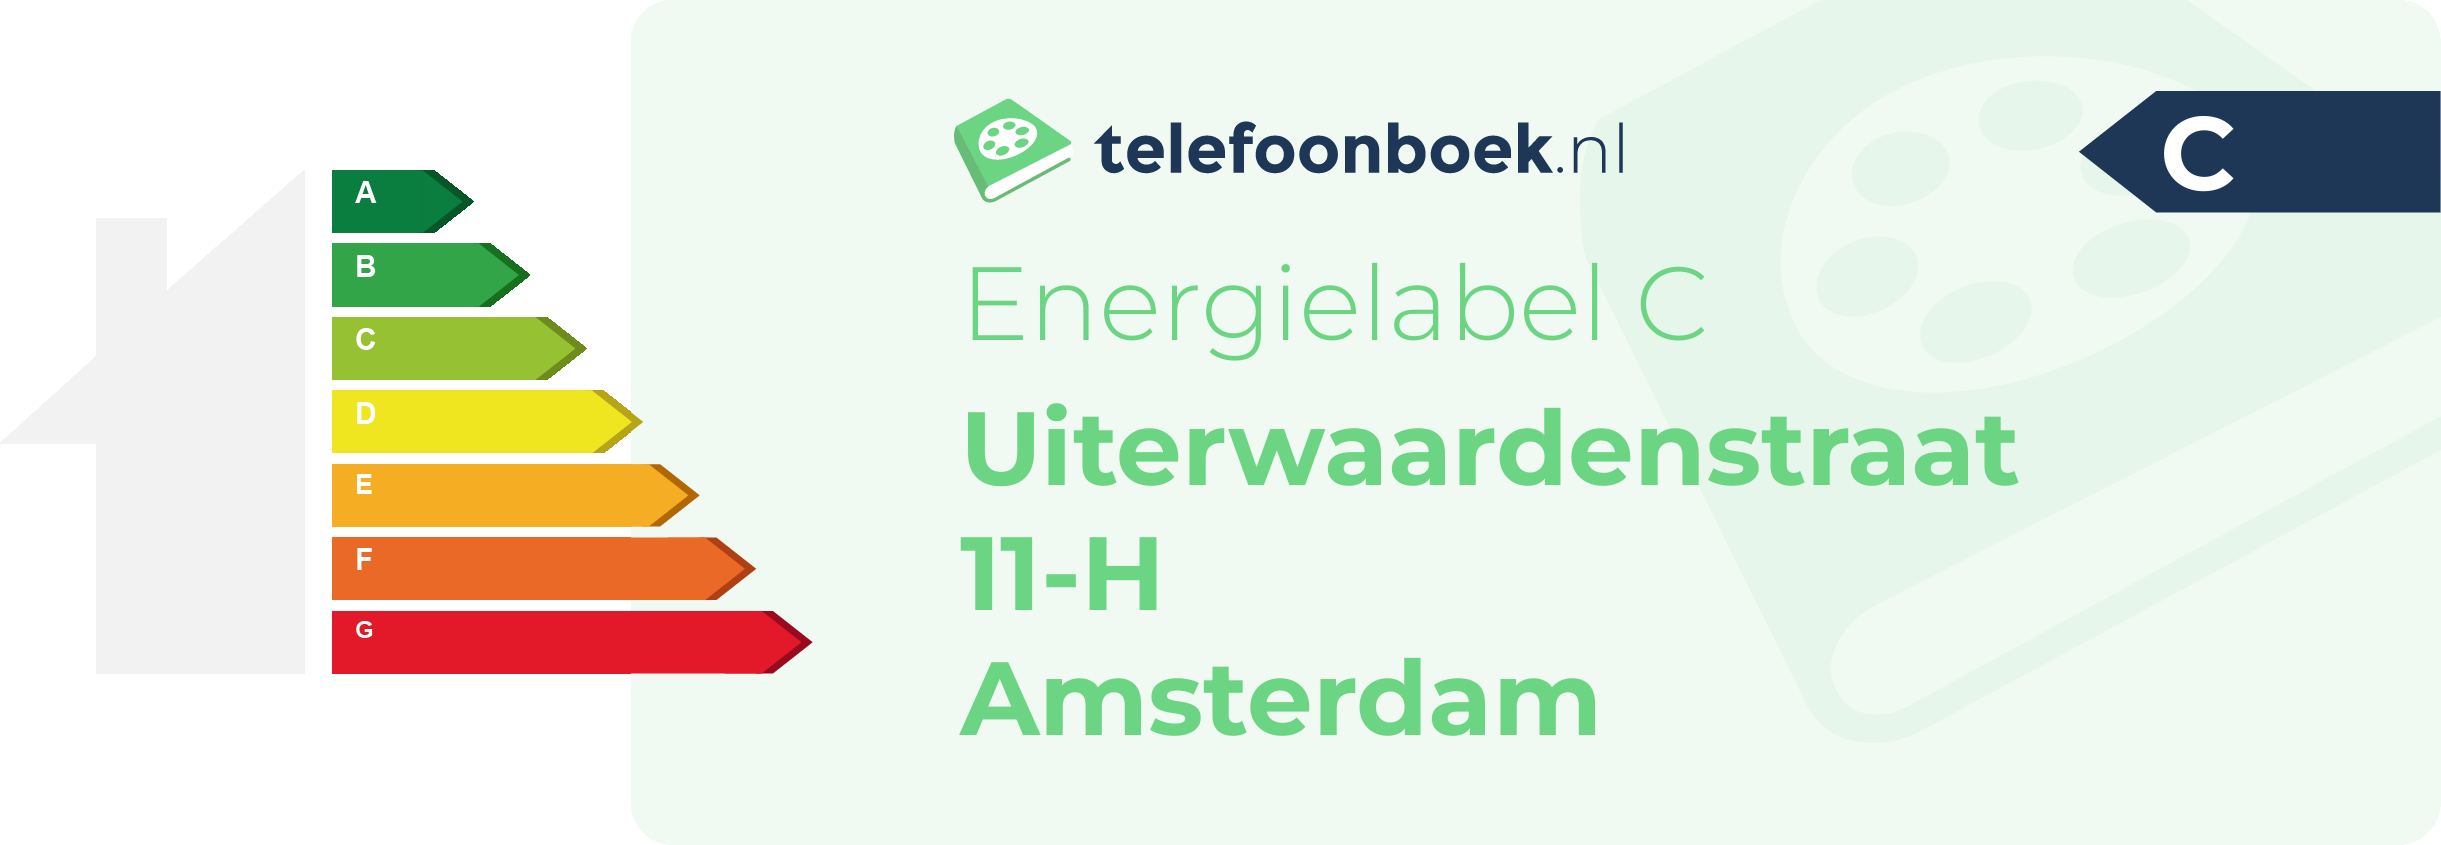 Energielabel Uiterwaardenstraat 11-H Amsterdam